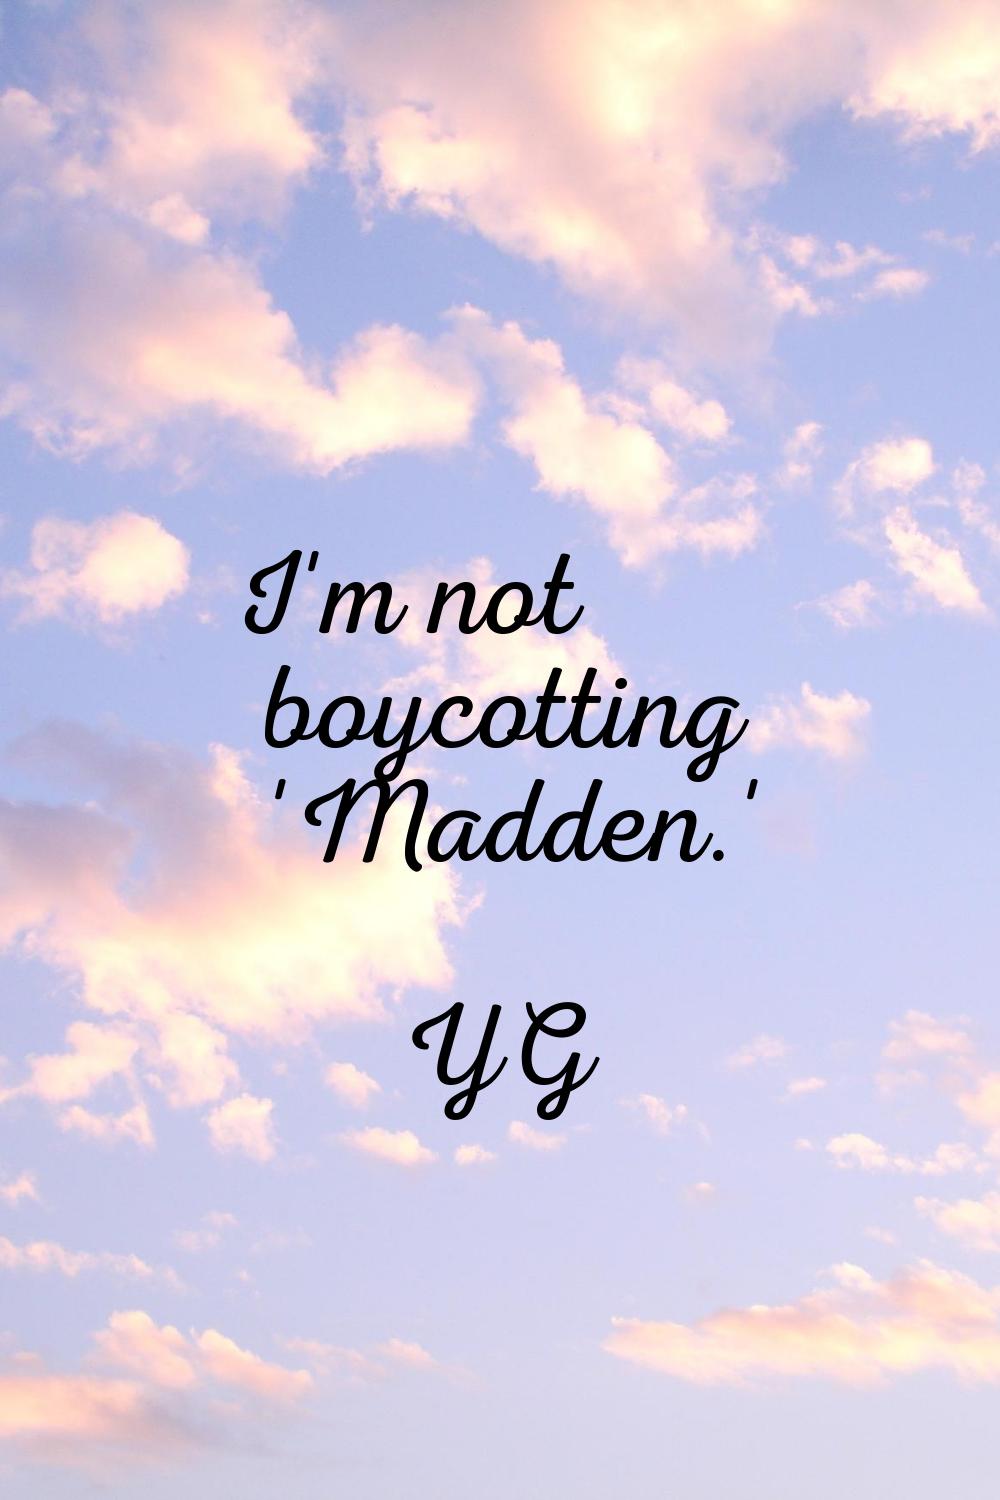 I'm not boycotting 'Madden.'